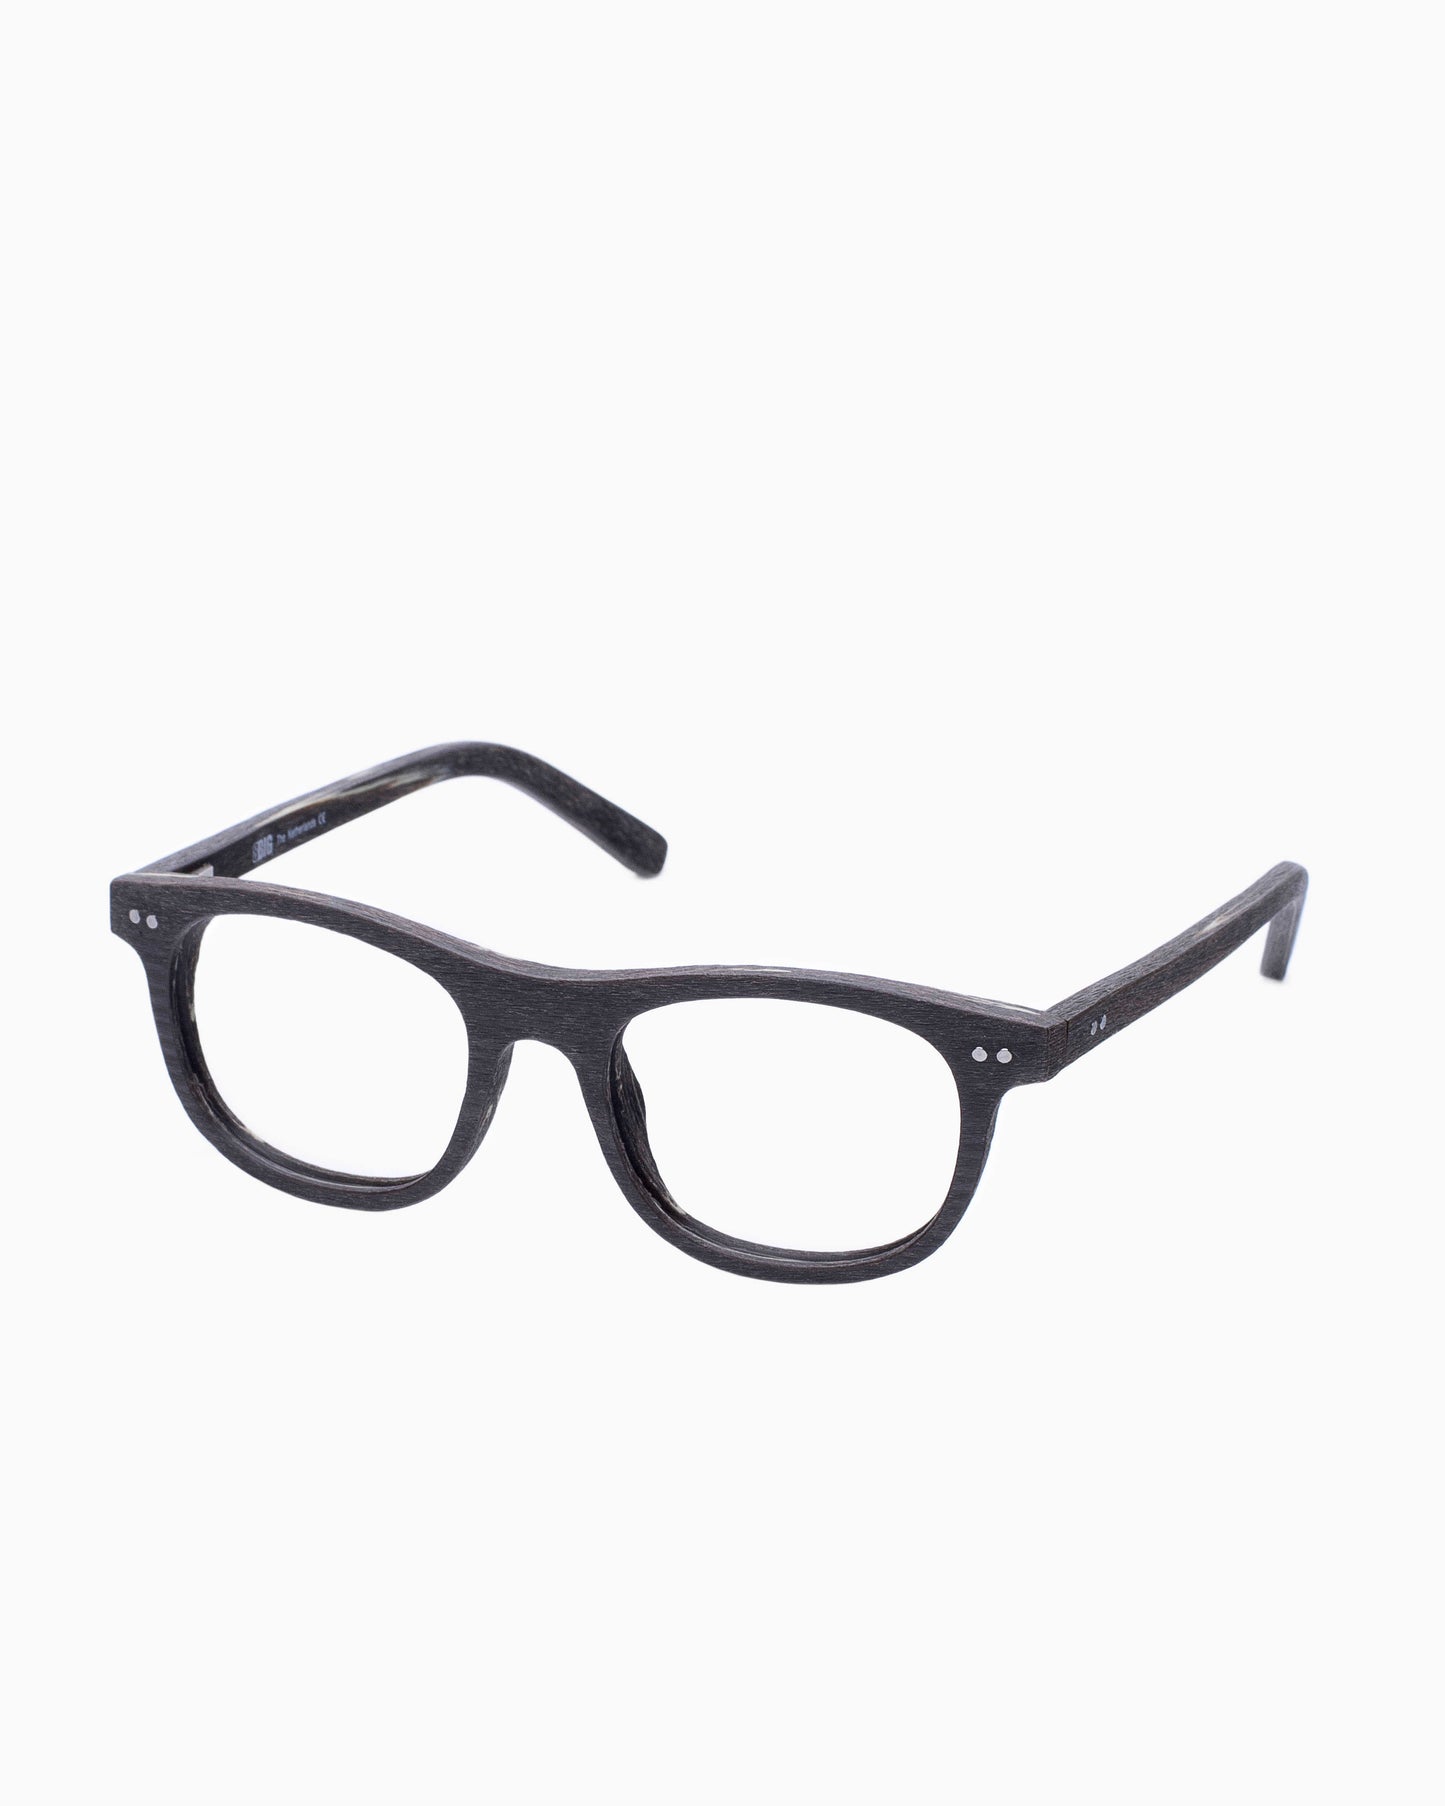 BBig - 219 - 391 | glasses bar